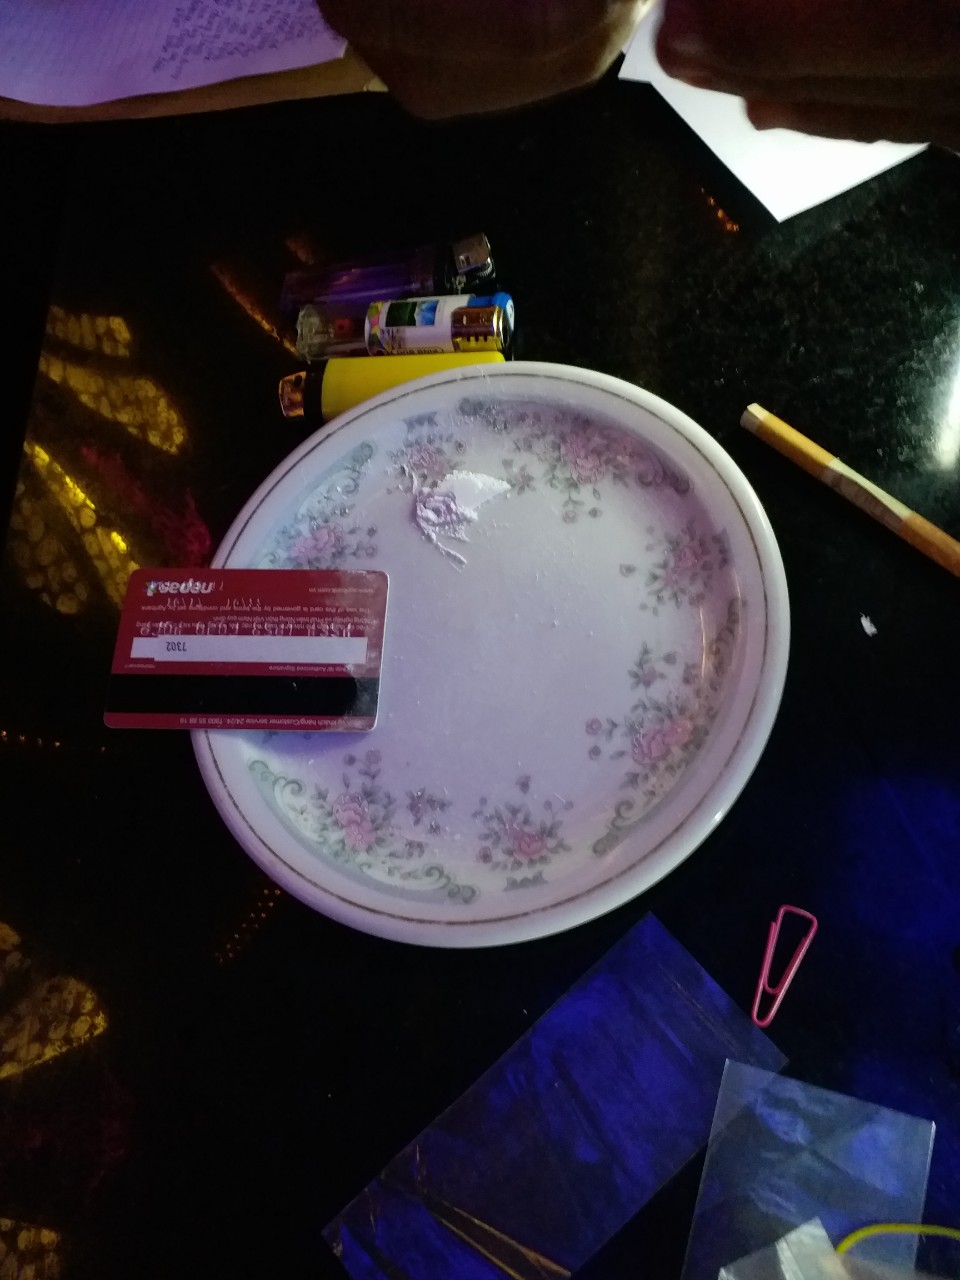 Trên bàn có 1 đĩa chứa chất bột màu trắng nghi là chất ma túy.